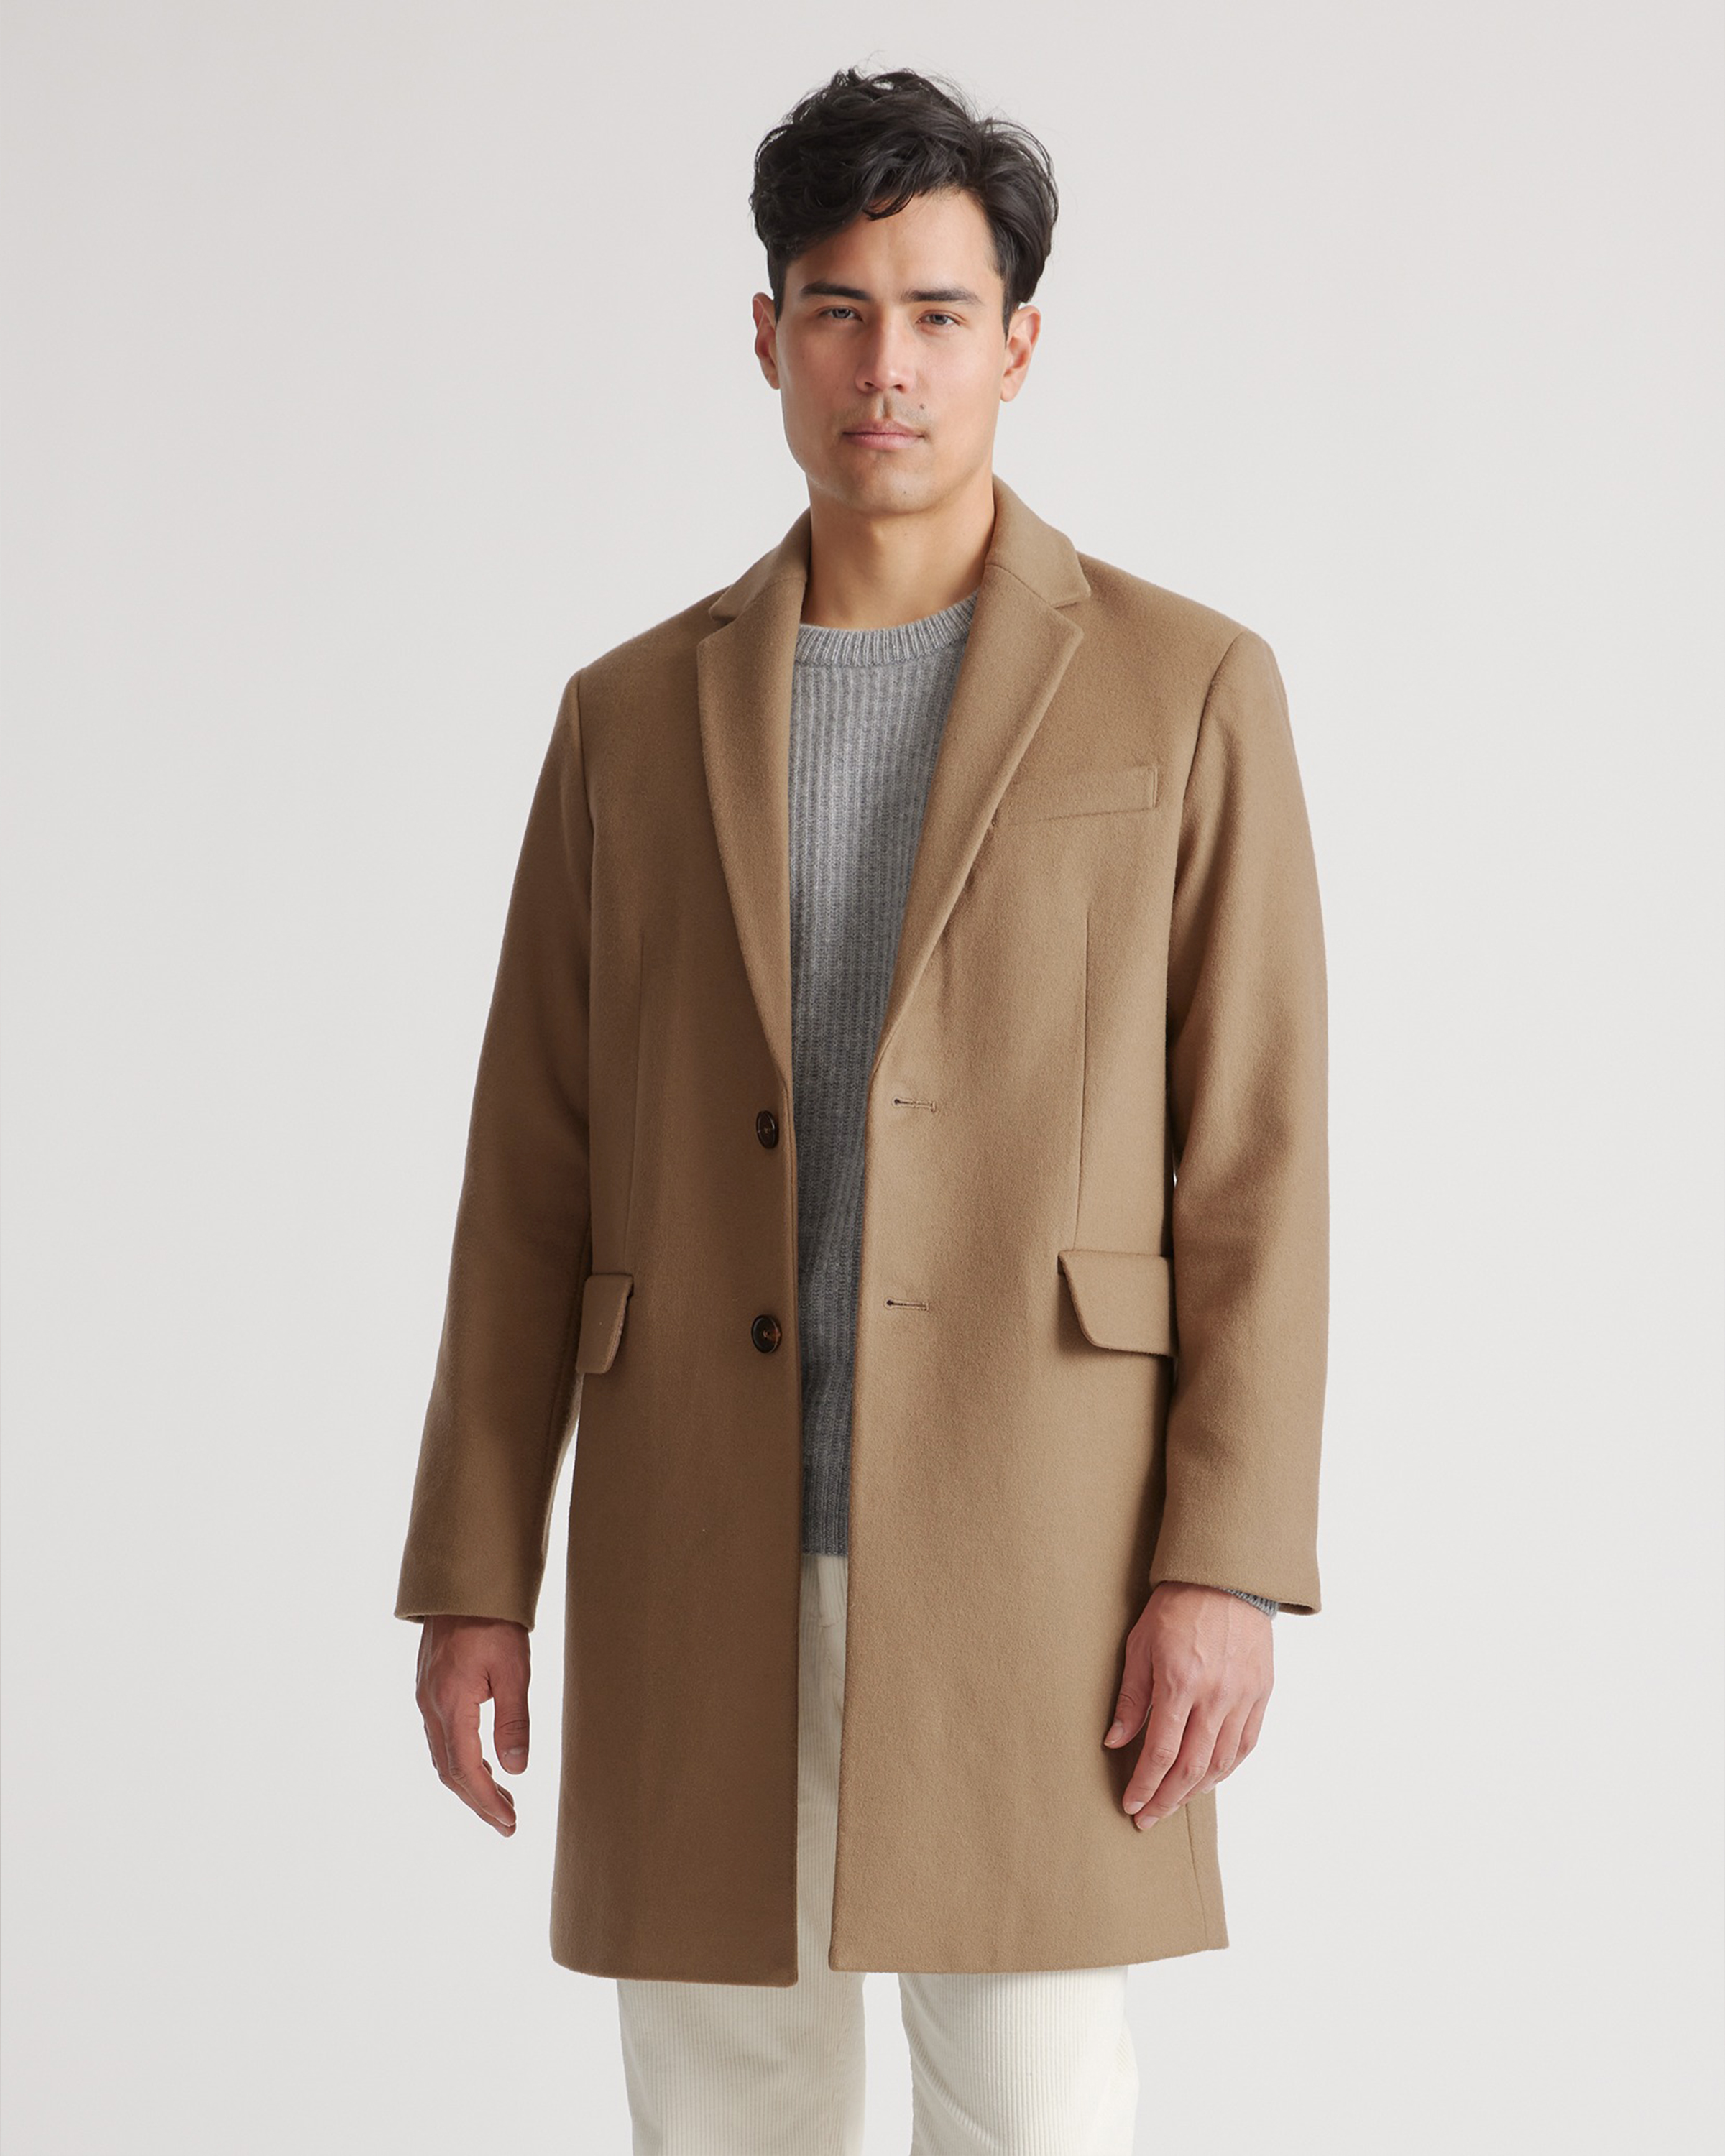 Quince Men's Italian Wool Overcoat In Dark Camel